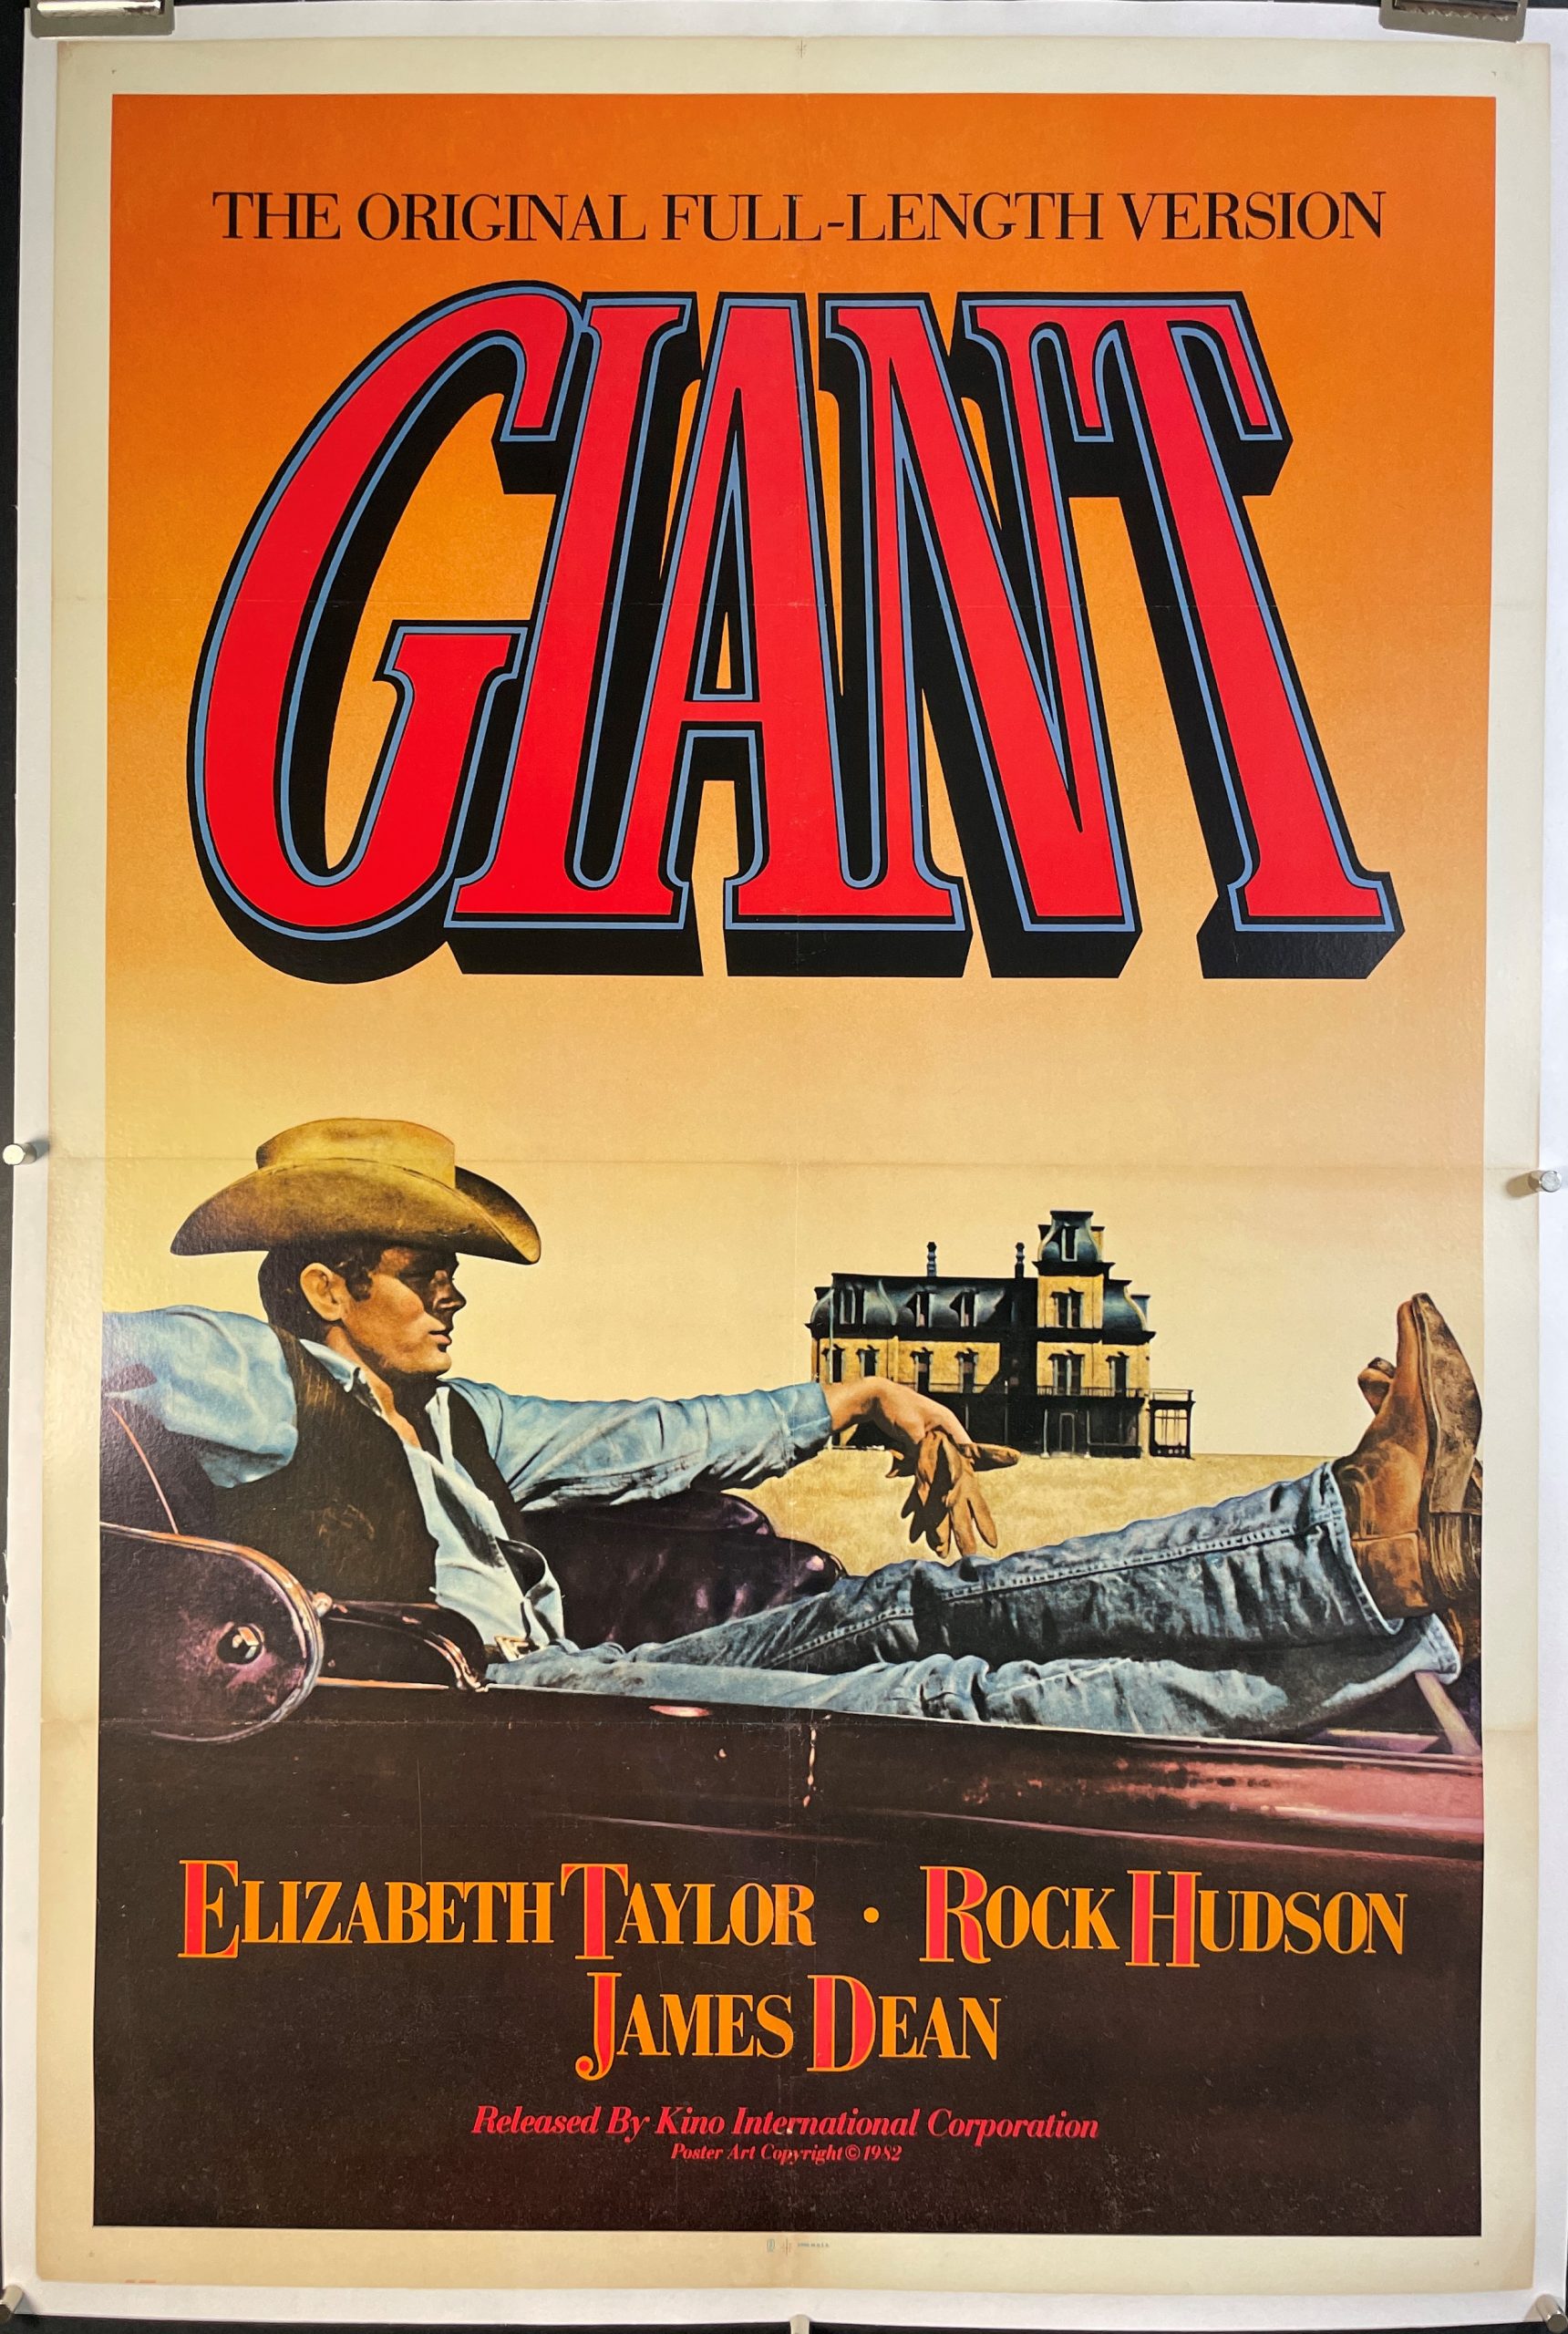 giant movie